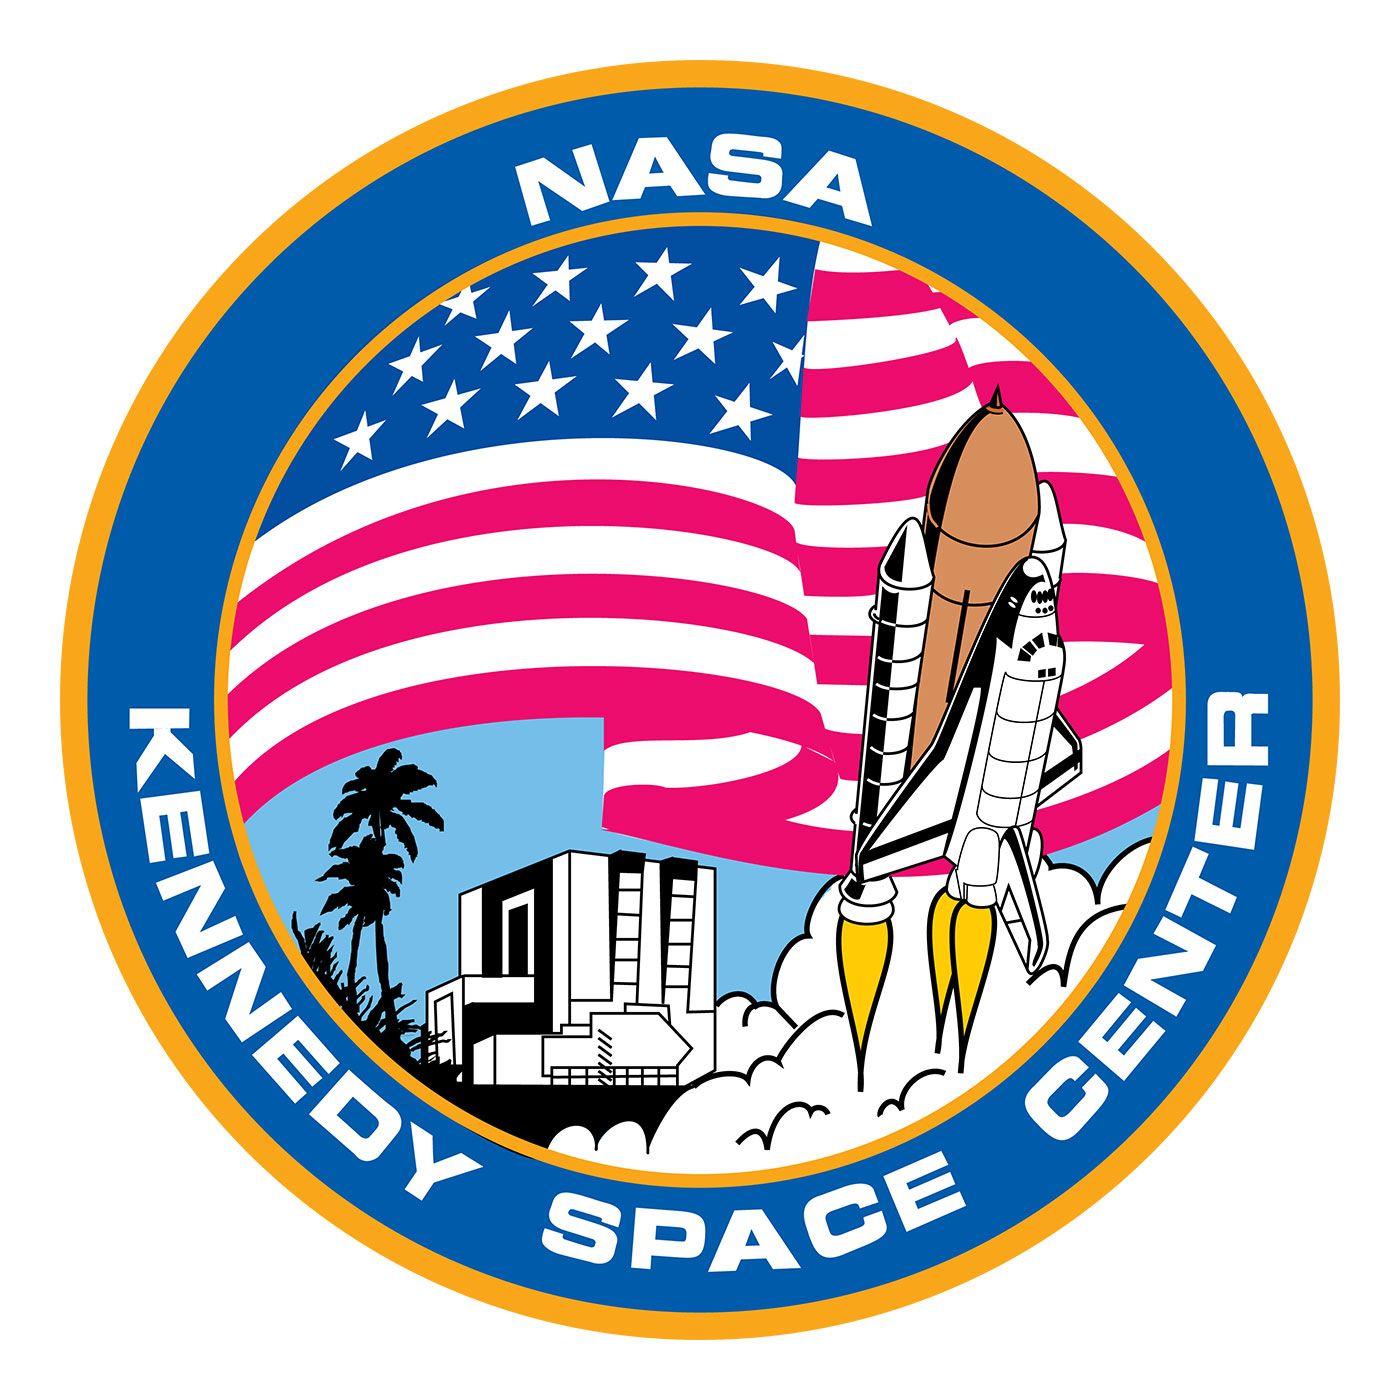 NASA Space Logo - NASA's Kennedy Space Center logo (